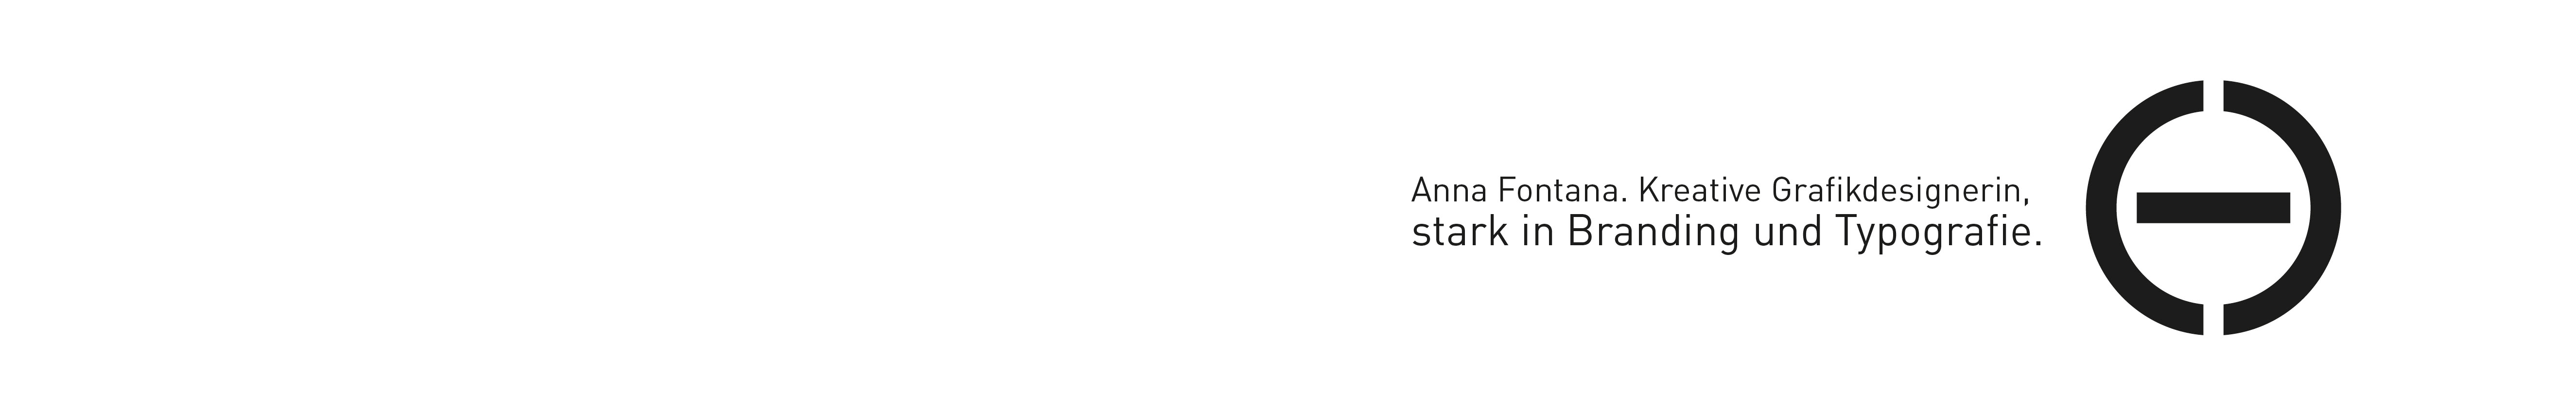 Anna Fontana's profile banner